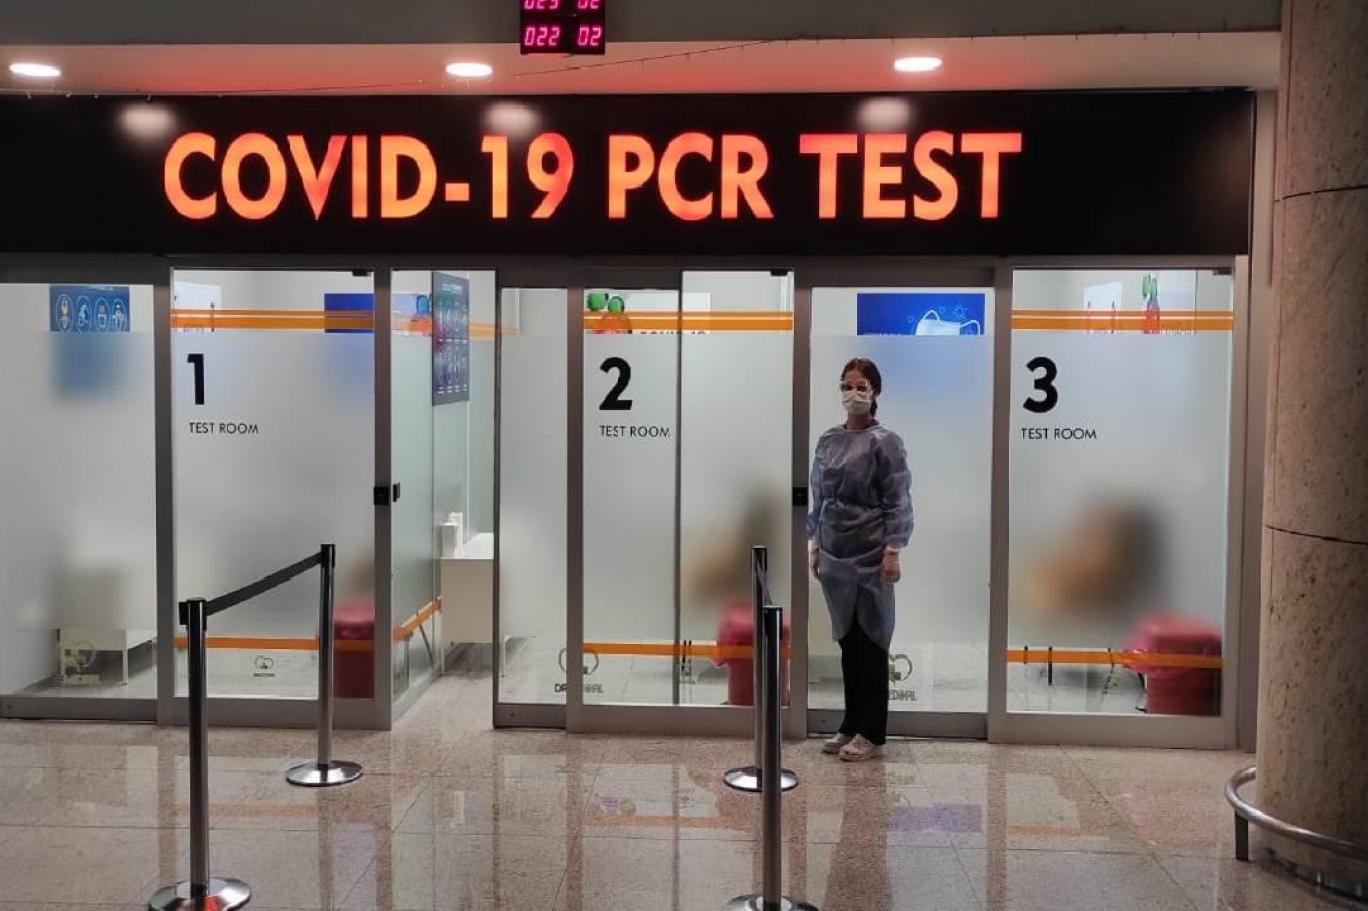 Bazı ülkelerden Türkiye'ye uçakla gelecek yolculardan 15 Mayıs'tan itibaren PCR testi istenmeyecek